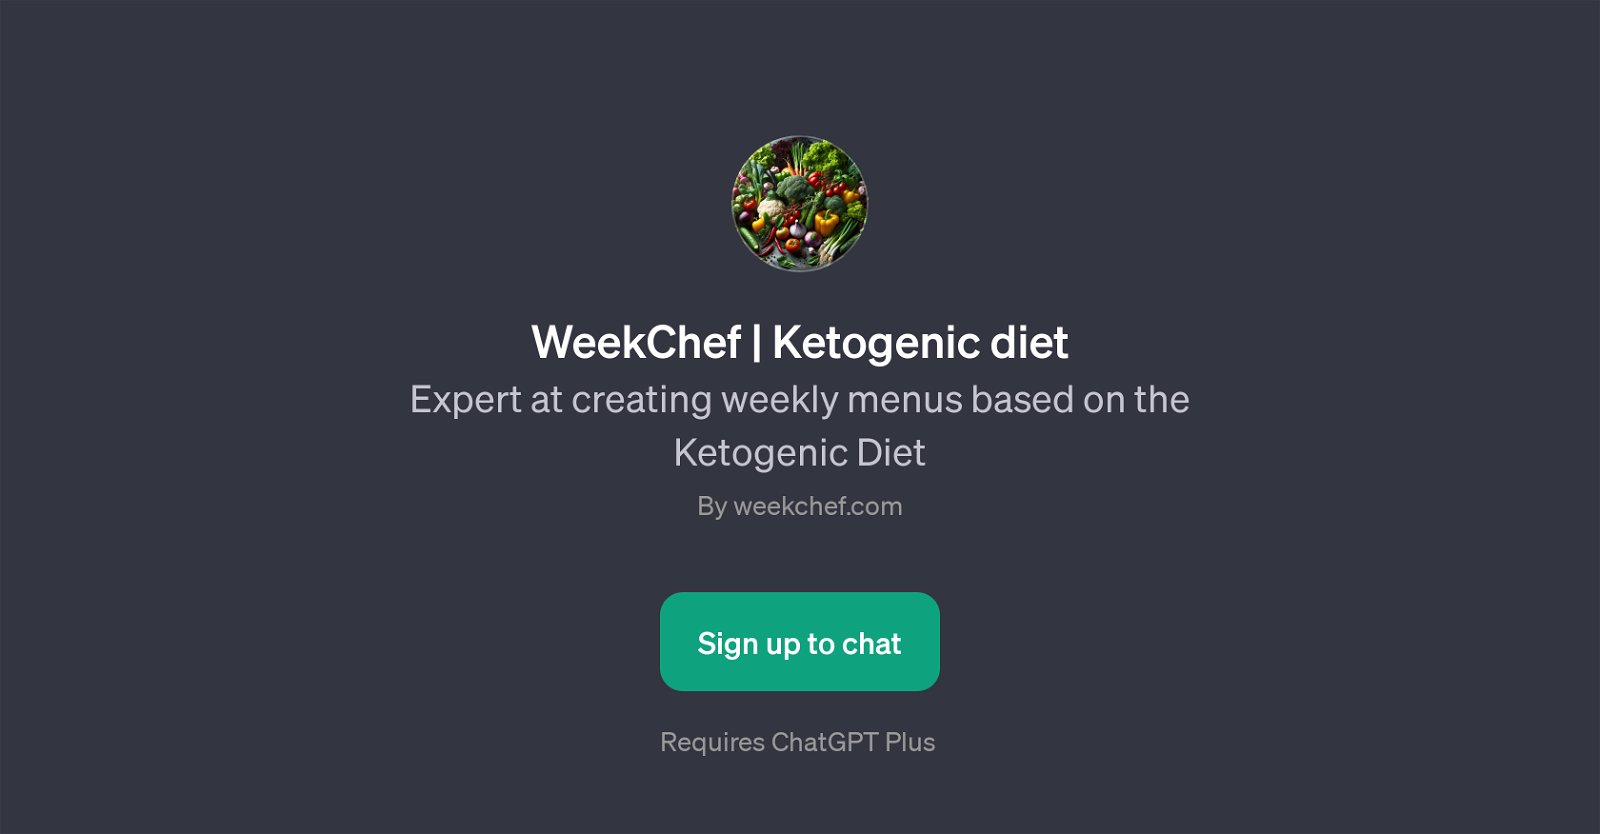 WeekChef | Ketogenic diet website